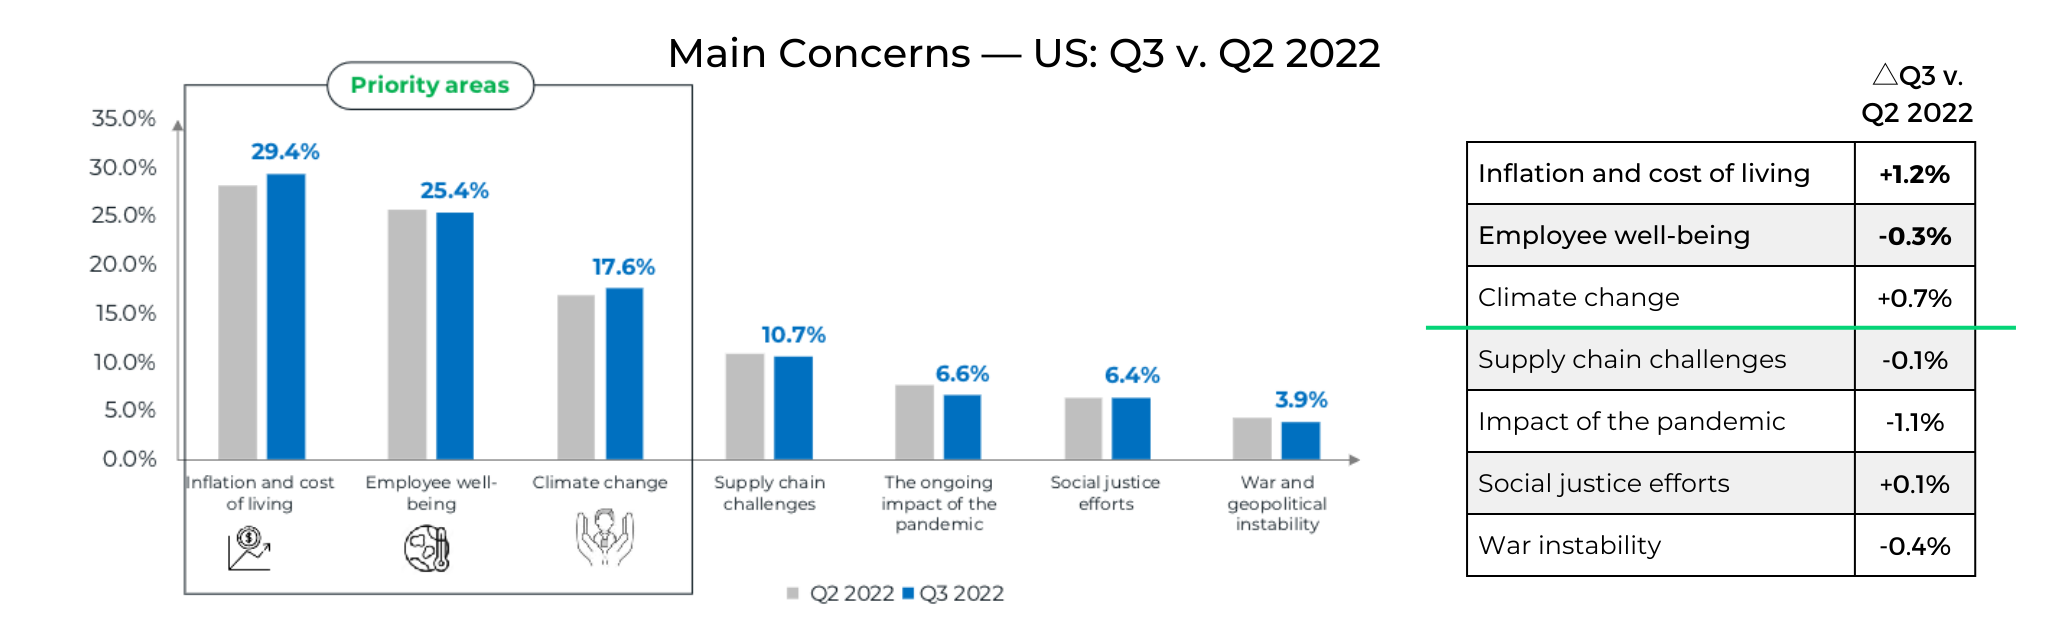 Main Concerns US Q3 v Q2 2022